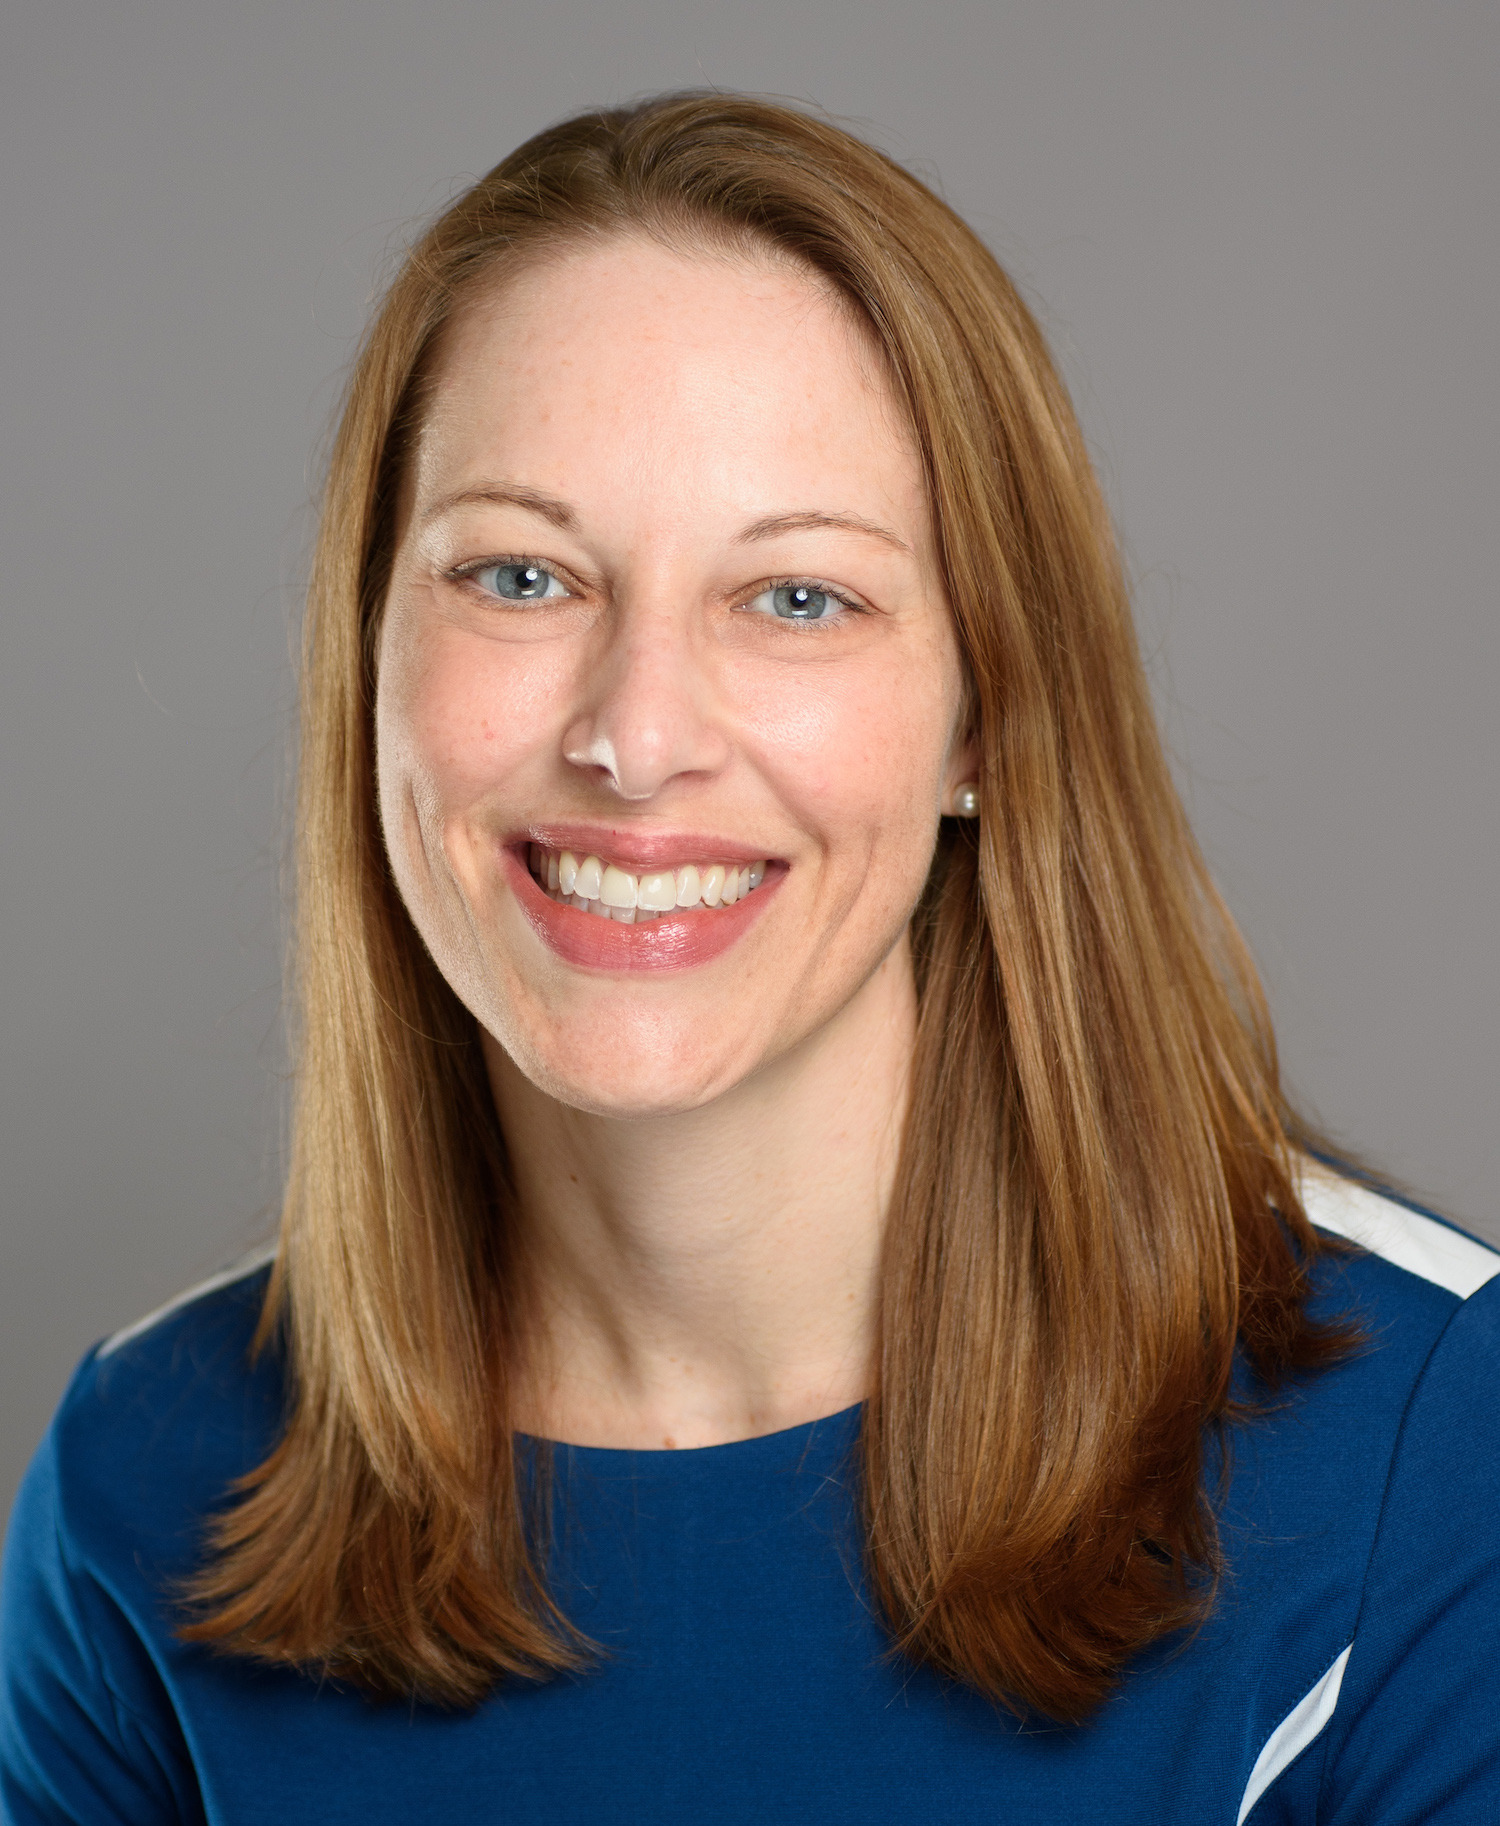 Dr. Anne Lachiewicz